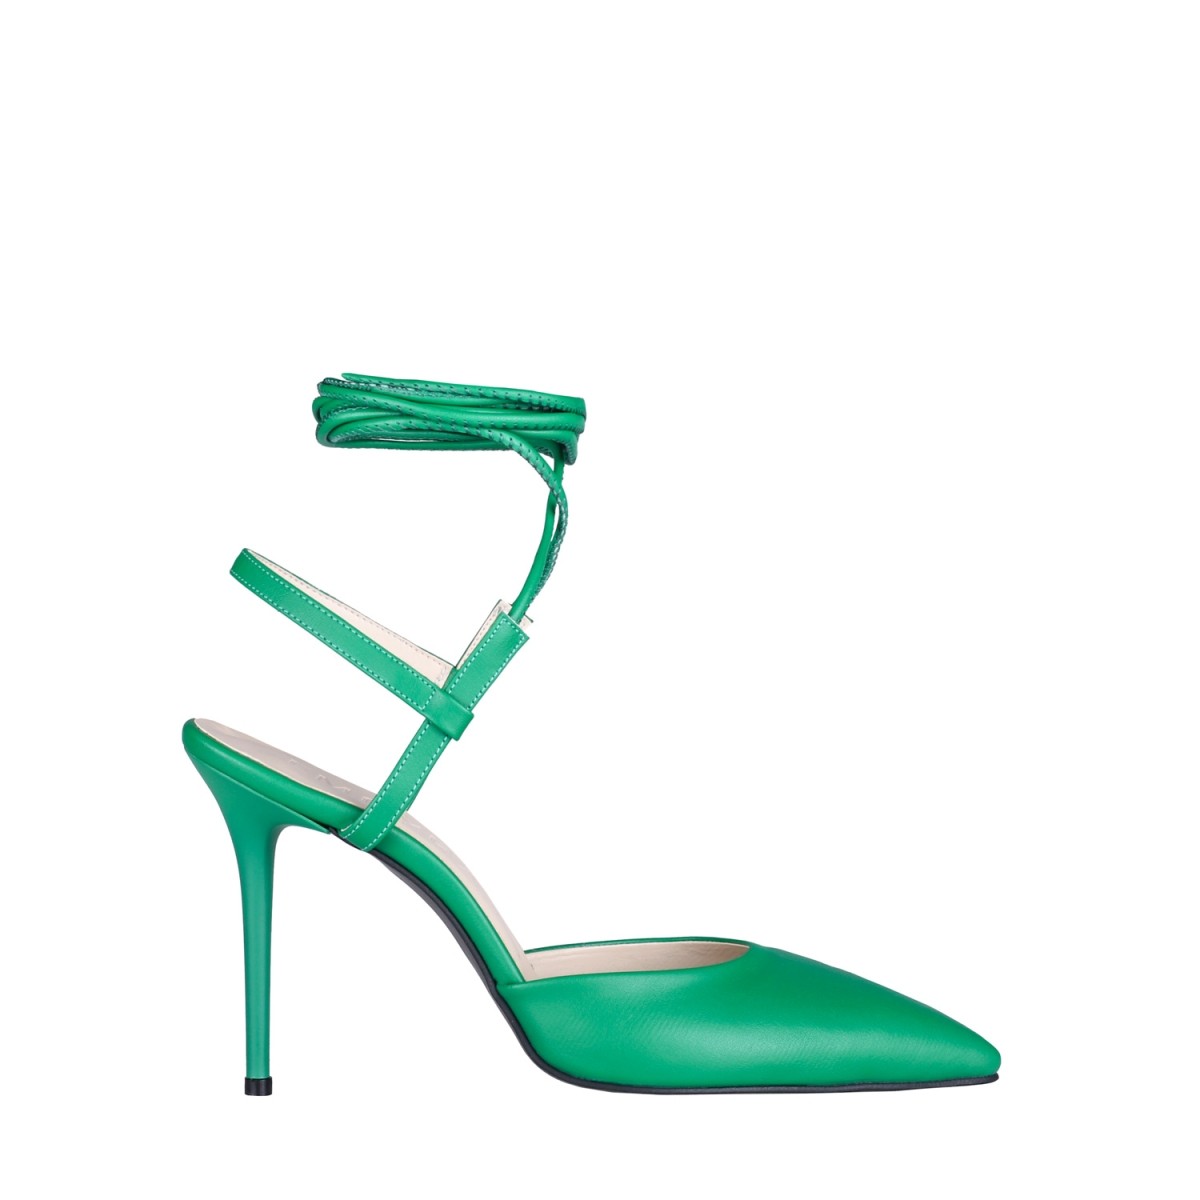 Victoria İnce Yüksek Topuklu Ayakkabı Stiletto Yeşil